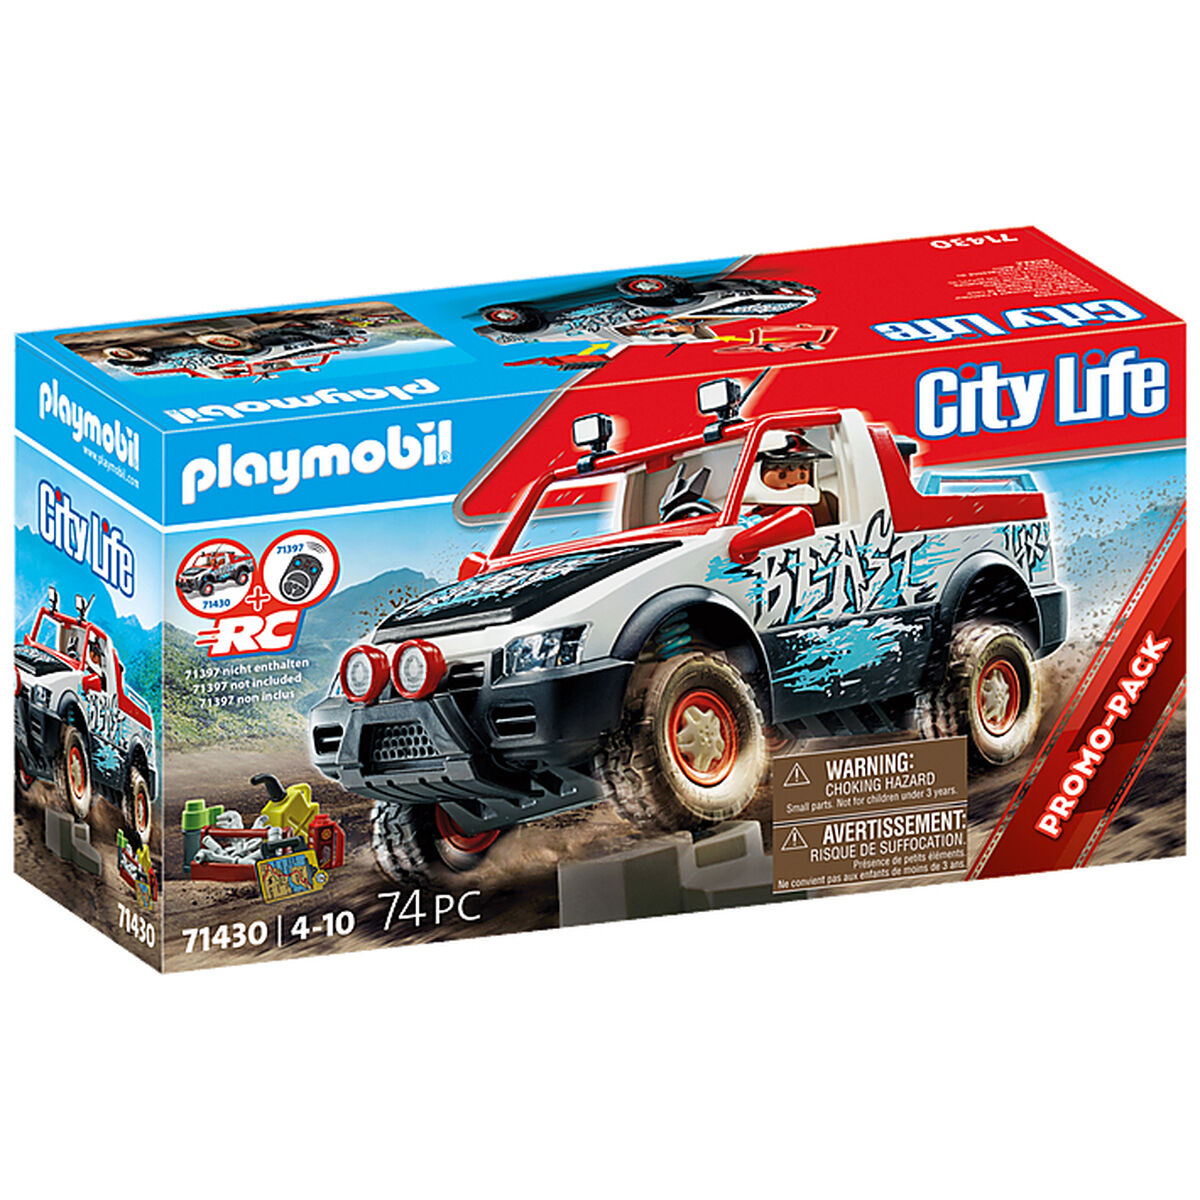 Playset Playmobil 71430 City Life-Leksaker och spel, Dockor och actionfigurer-Playmobil-peaceofhome.se